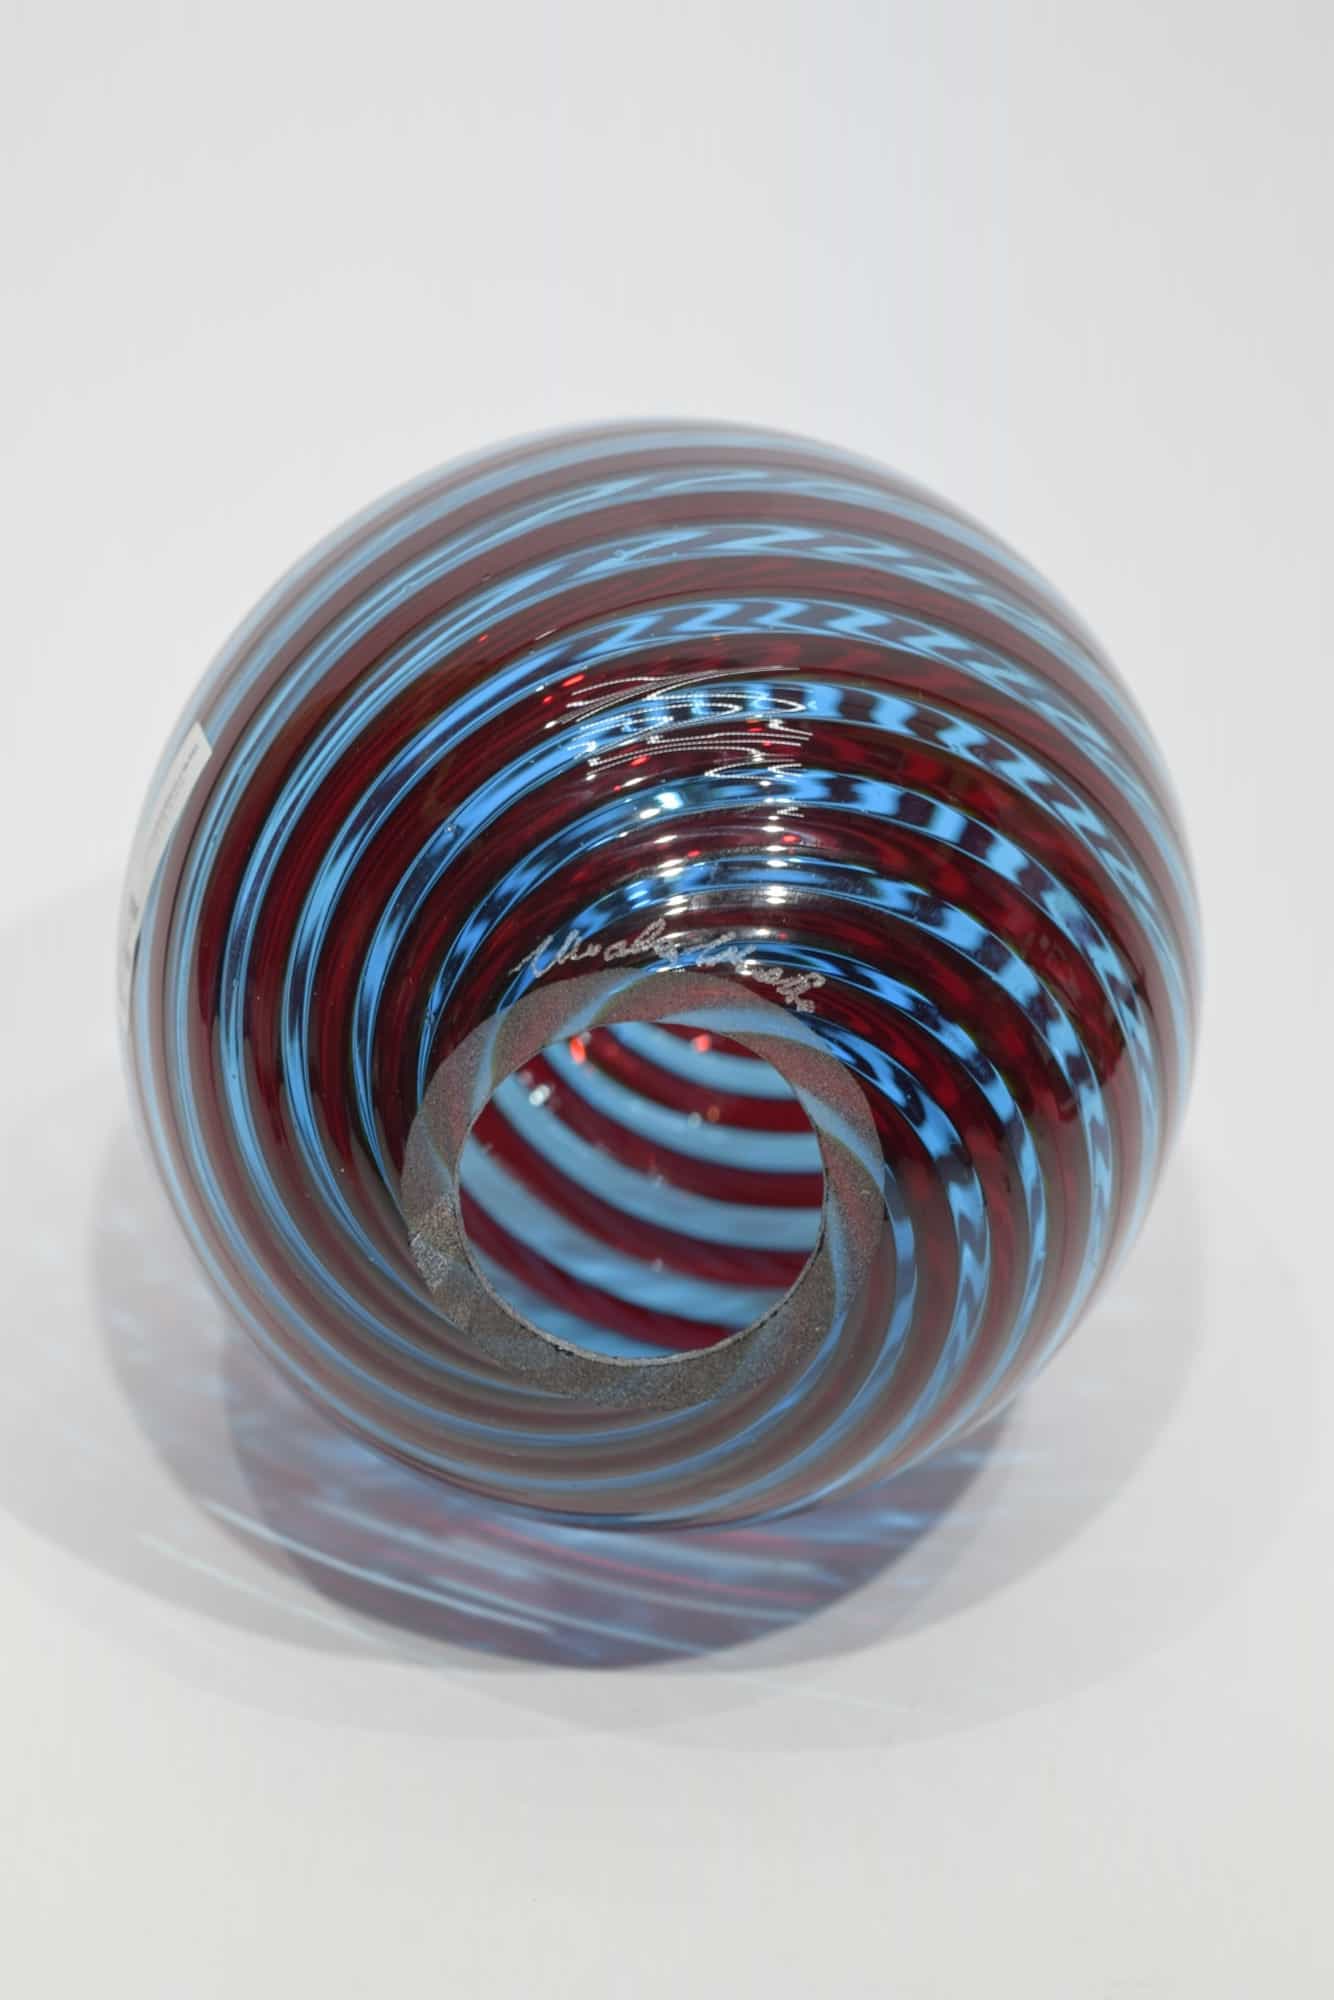 Egg-watermark-Murano-glass-10903